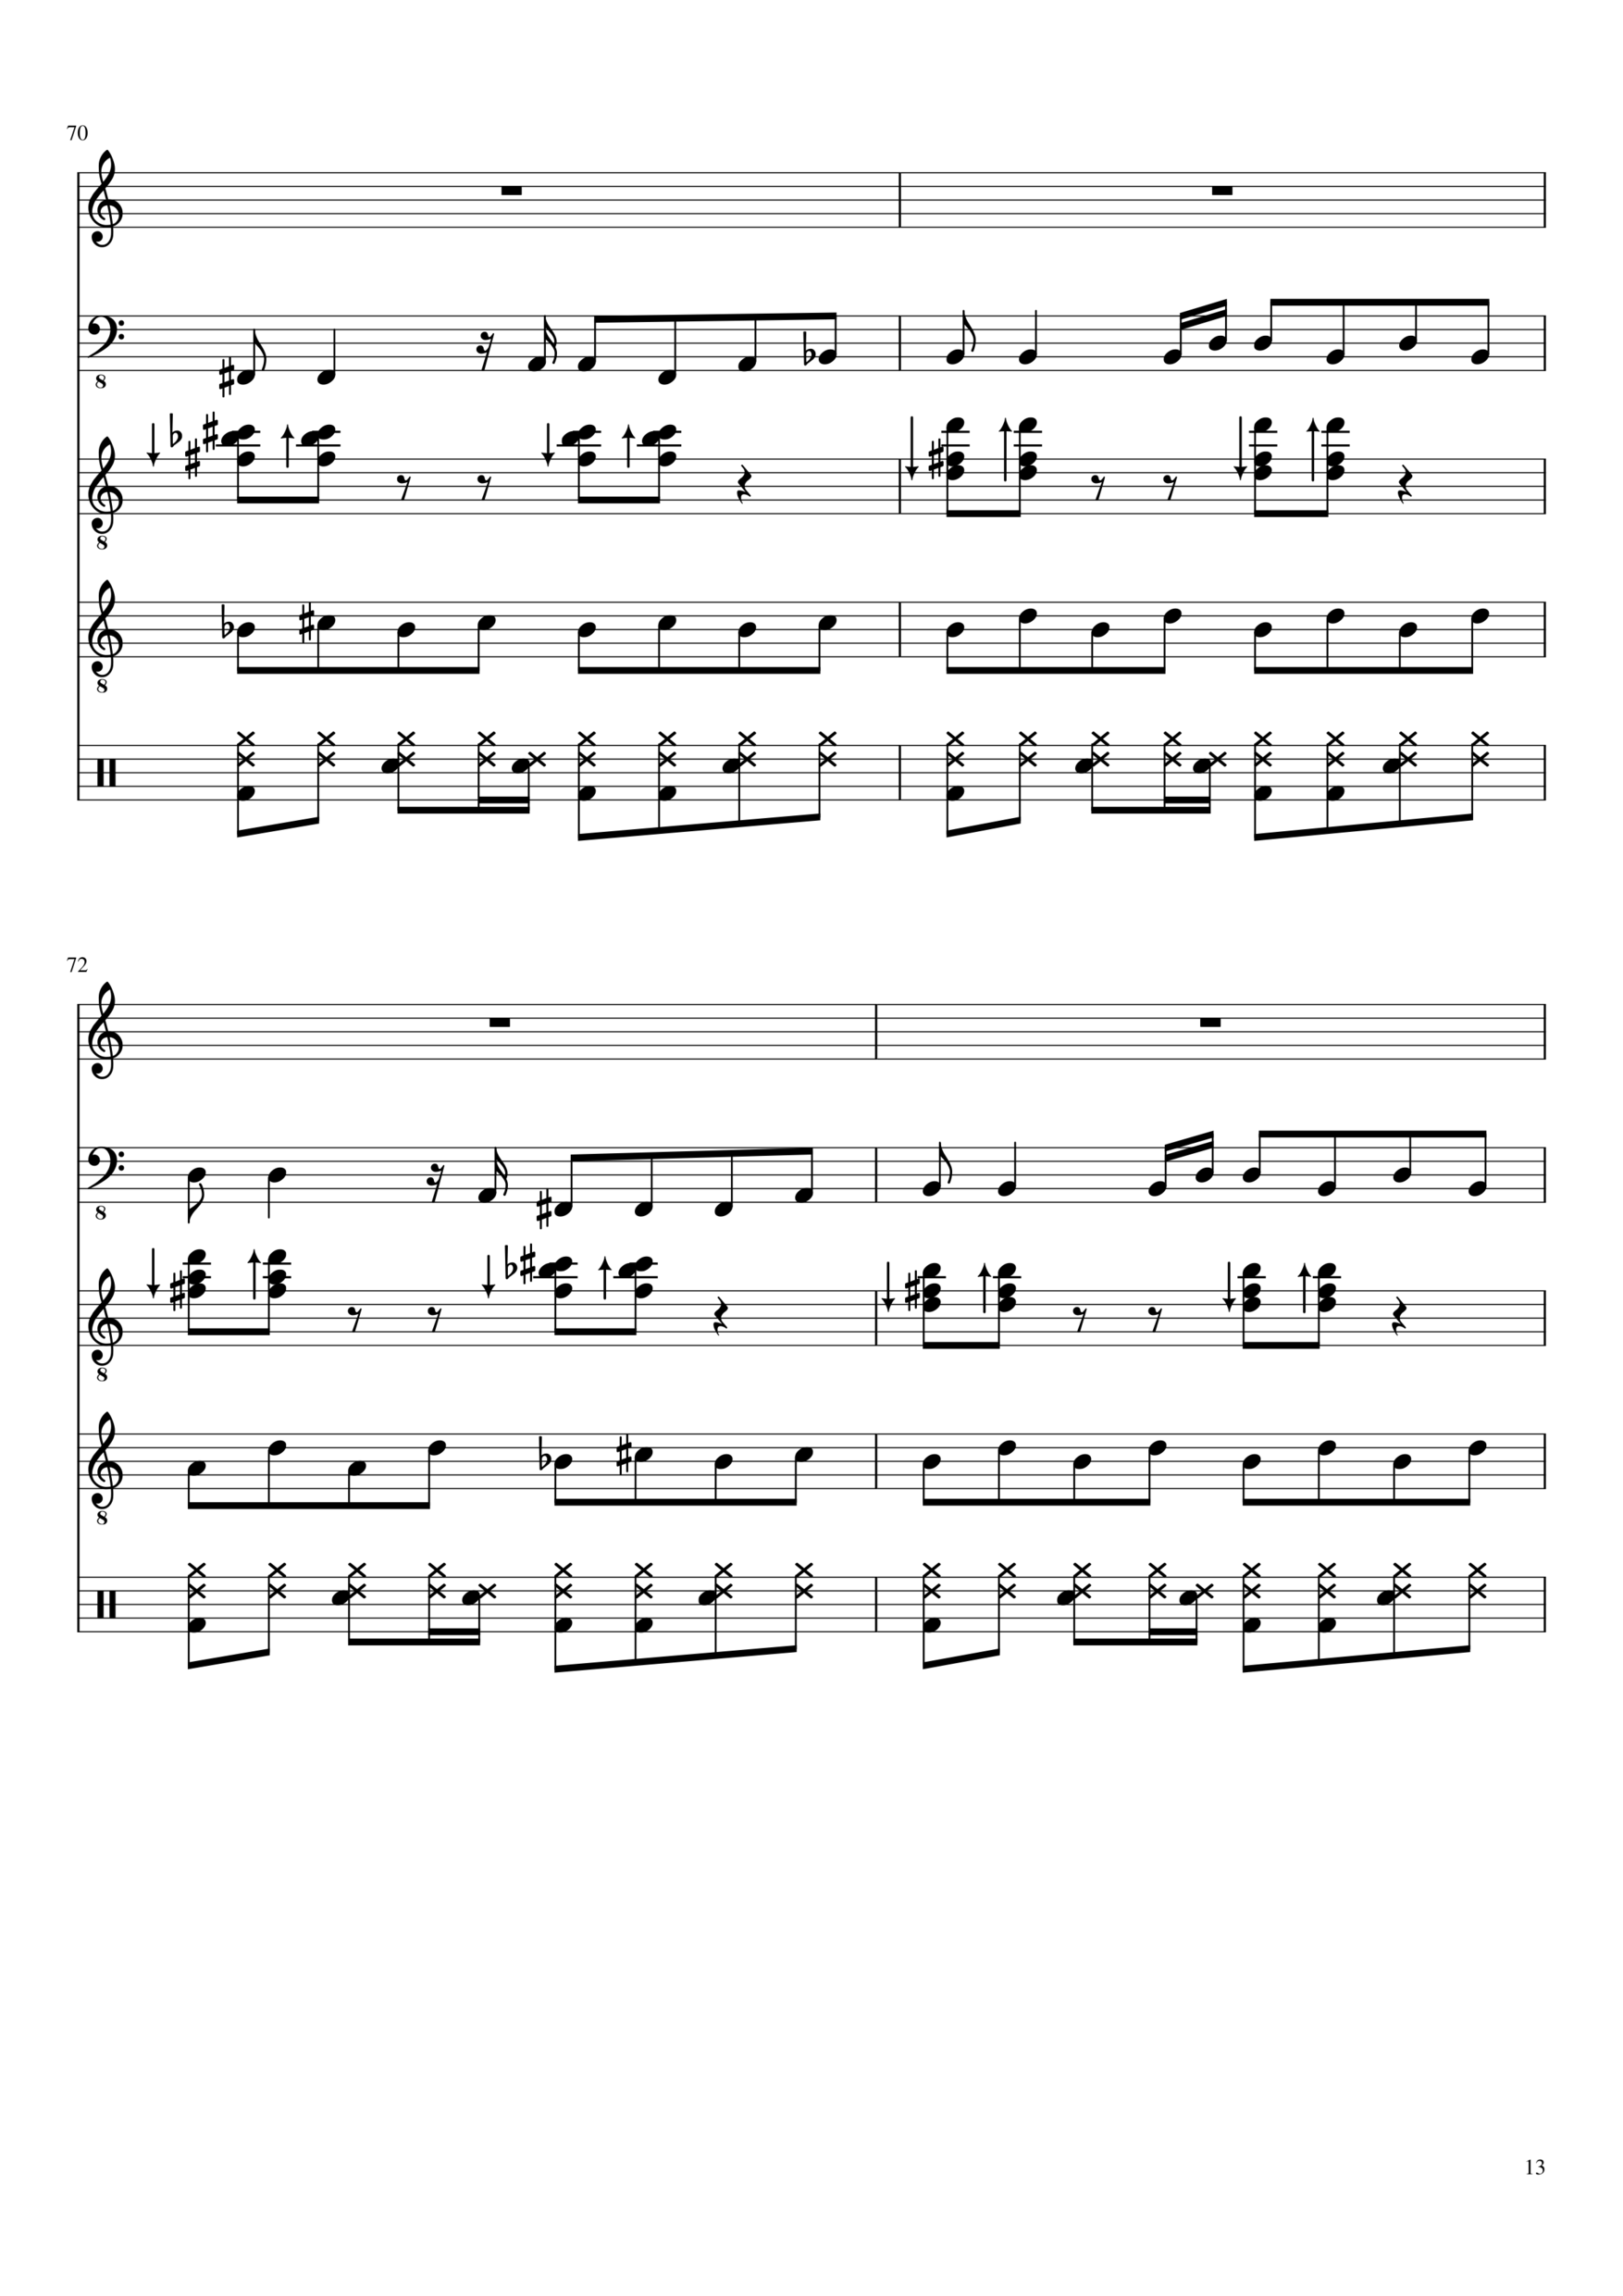 Vechnaya lyubov slide, Image 13